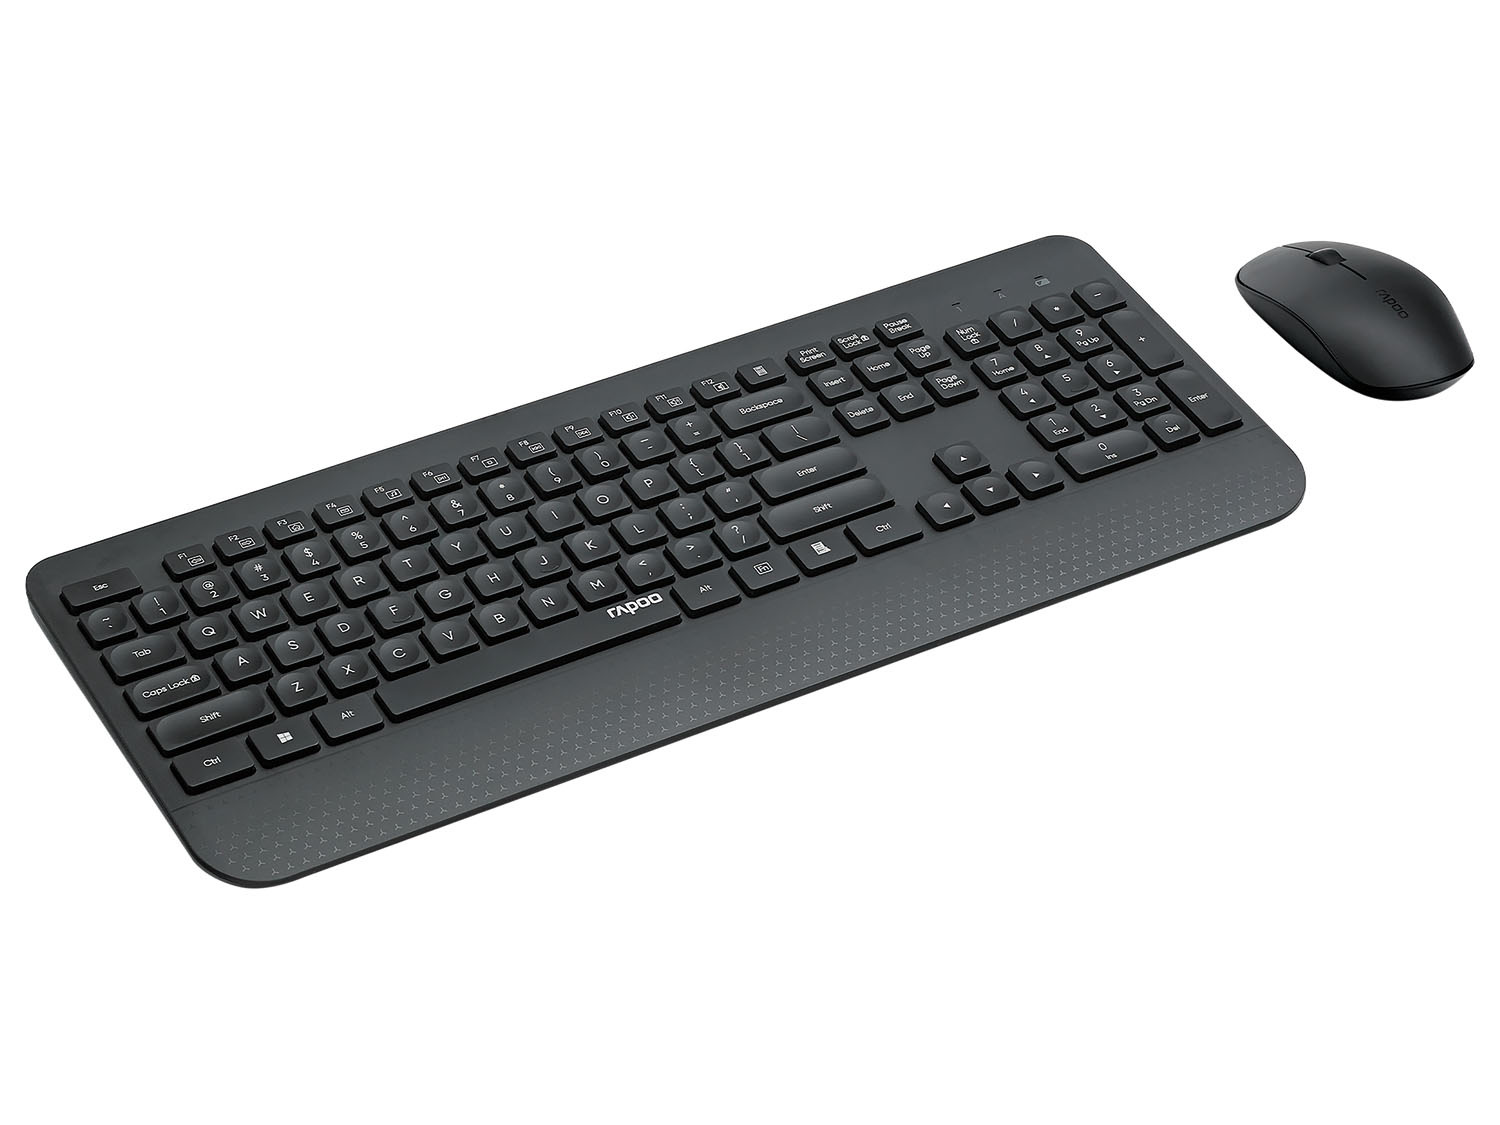 Keyboard »X3500«, DE-La… Mouse und Wireless Rapoo Combo